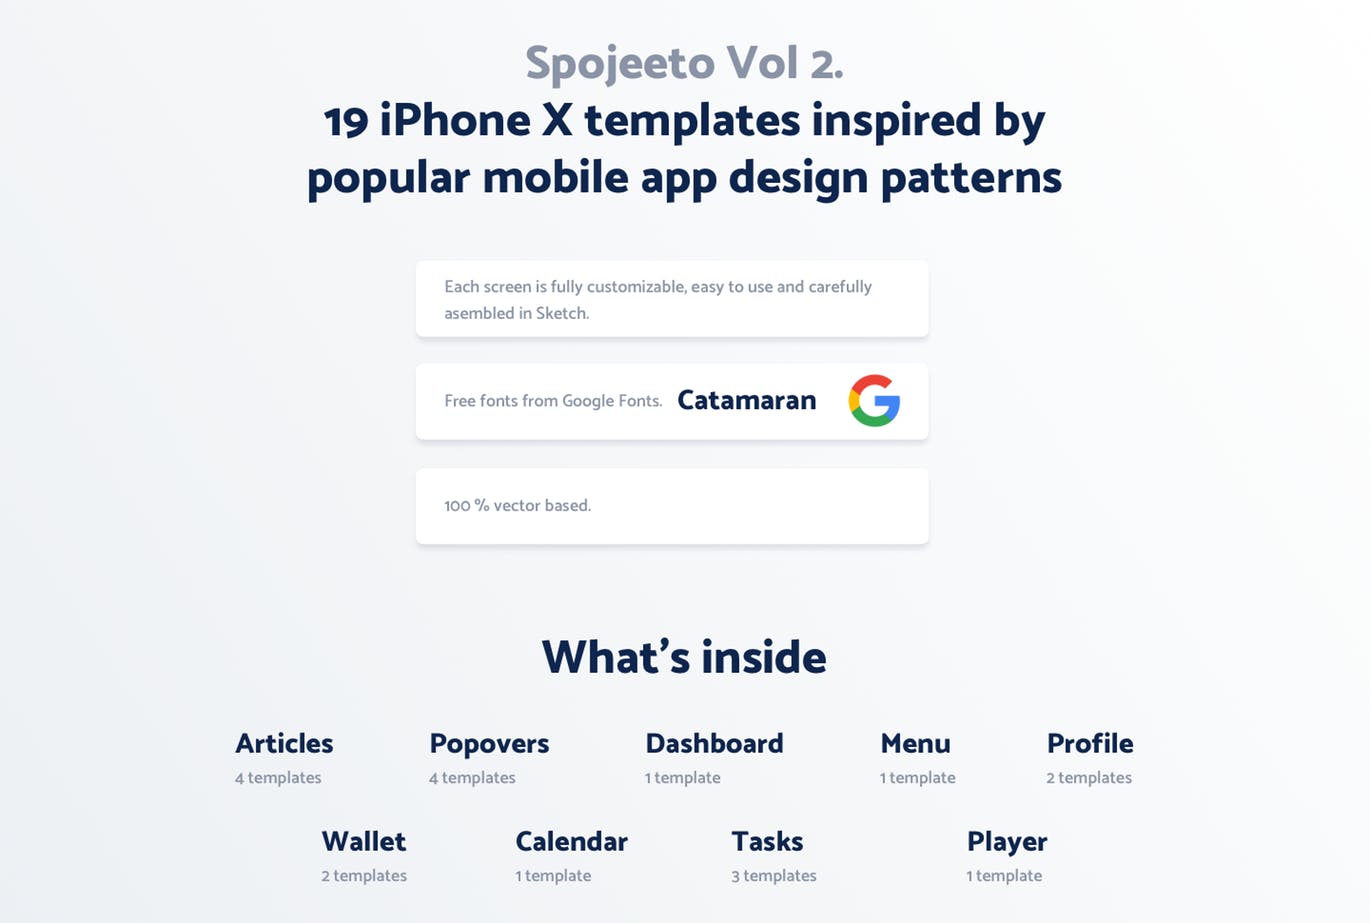 极简主义设计风格APP应用UI设计大洋岛精选套件v2 Vol. 2 – Spojeeto Mobile App UI Kit插图1